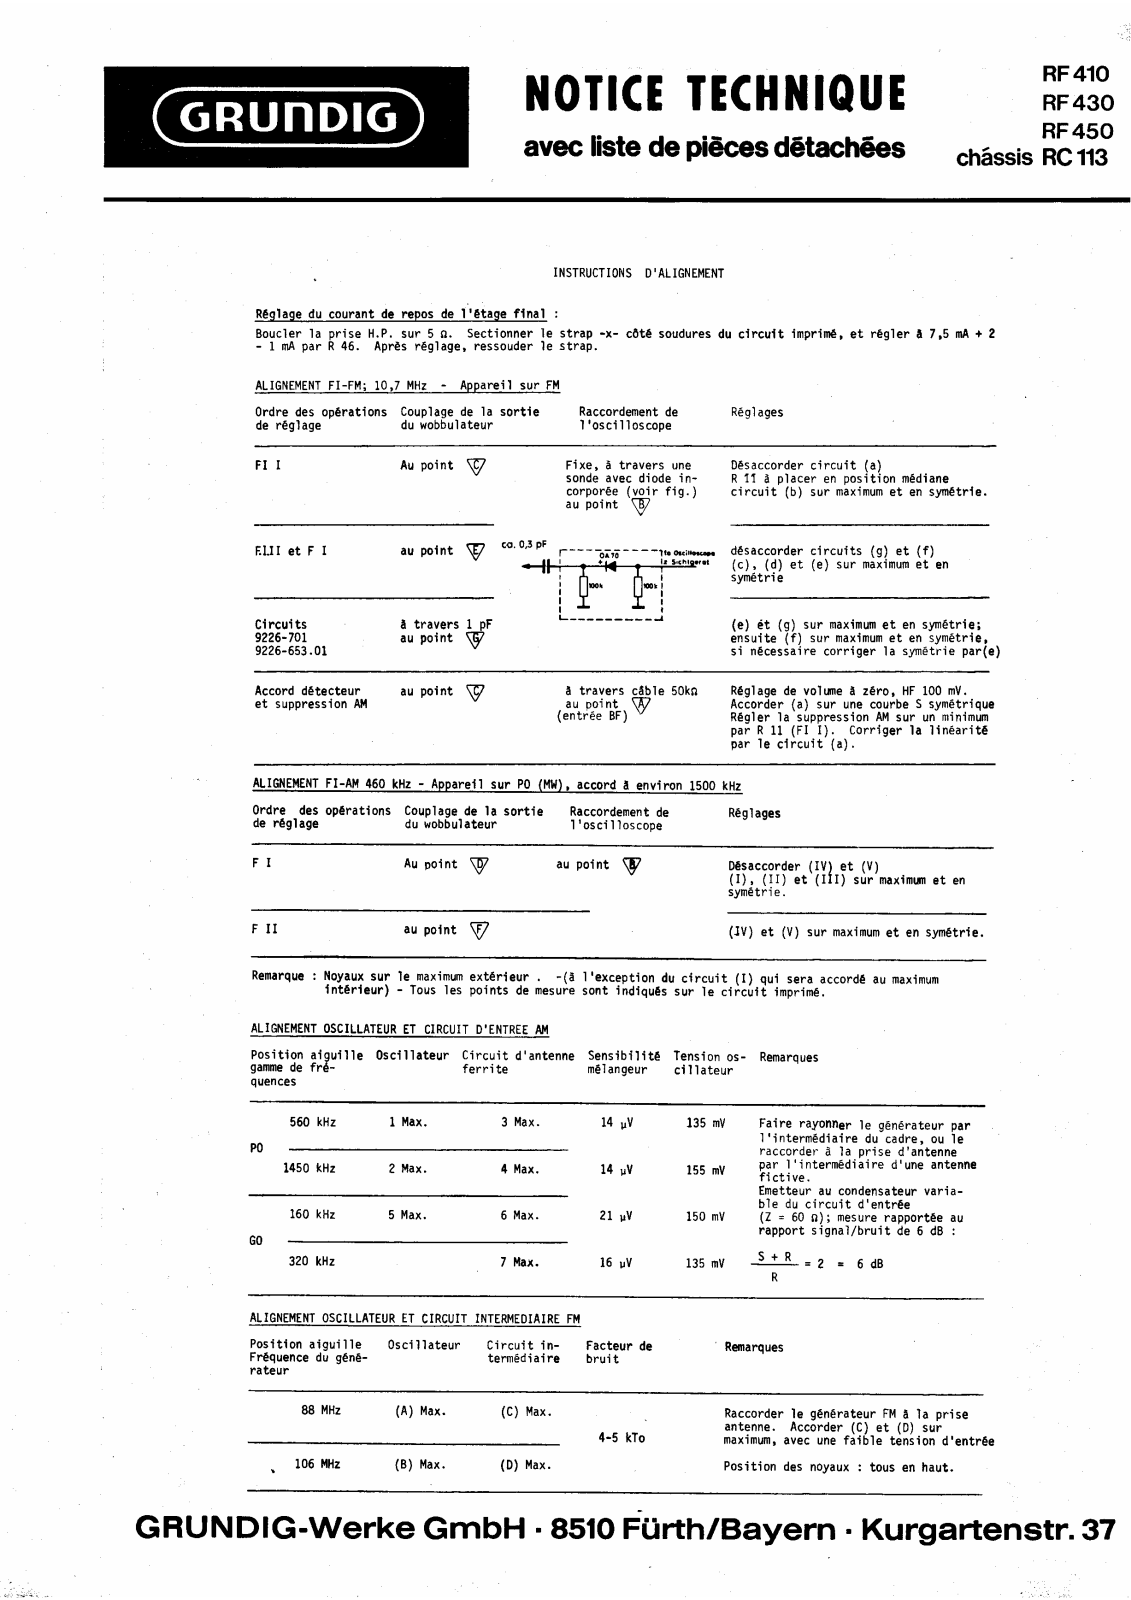 Grundig RF-450, RF-410, RC-113, RF-430 Service Manual